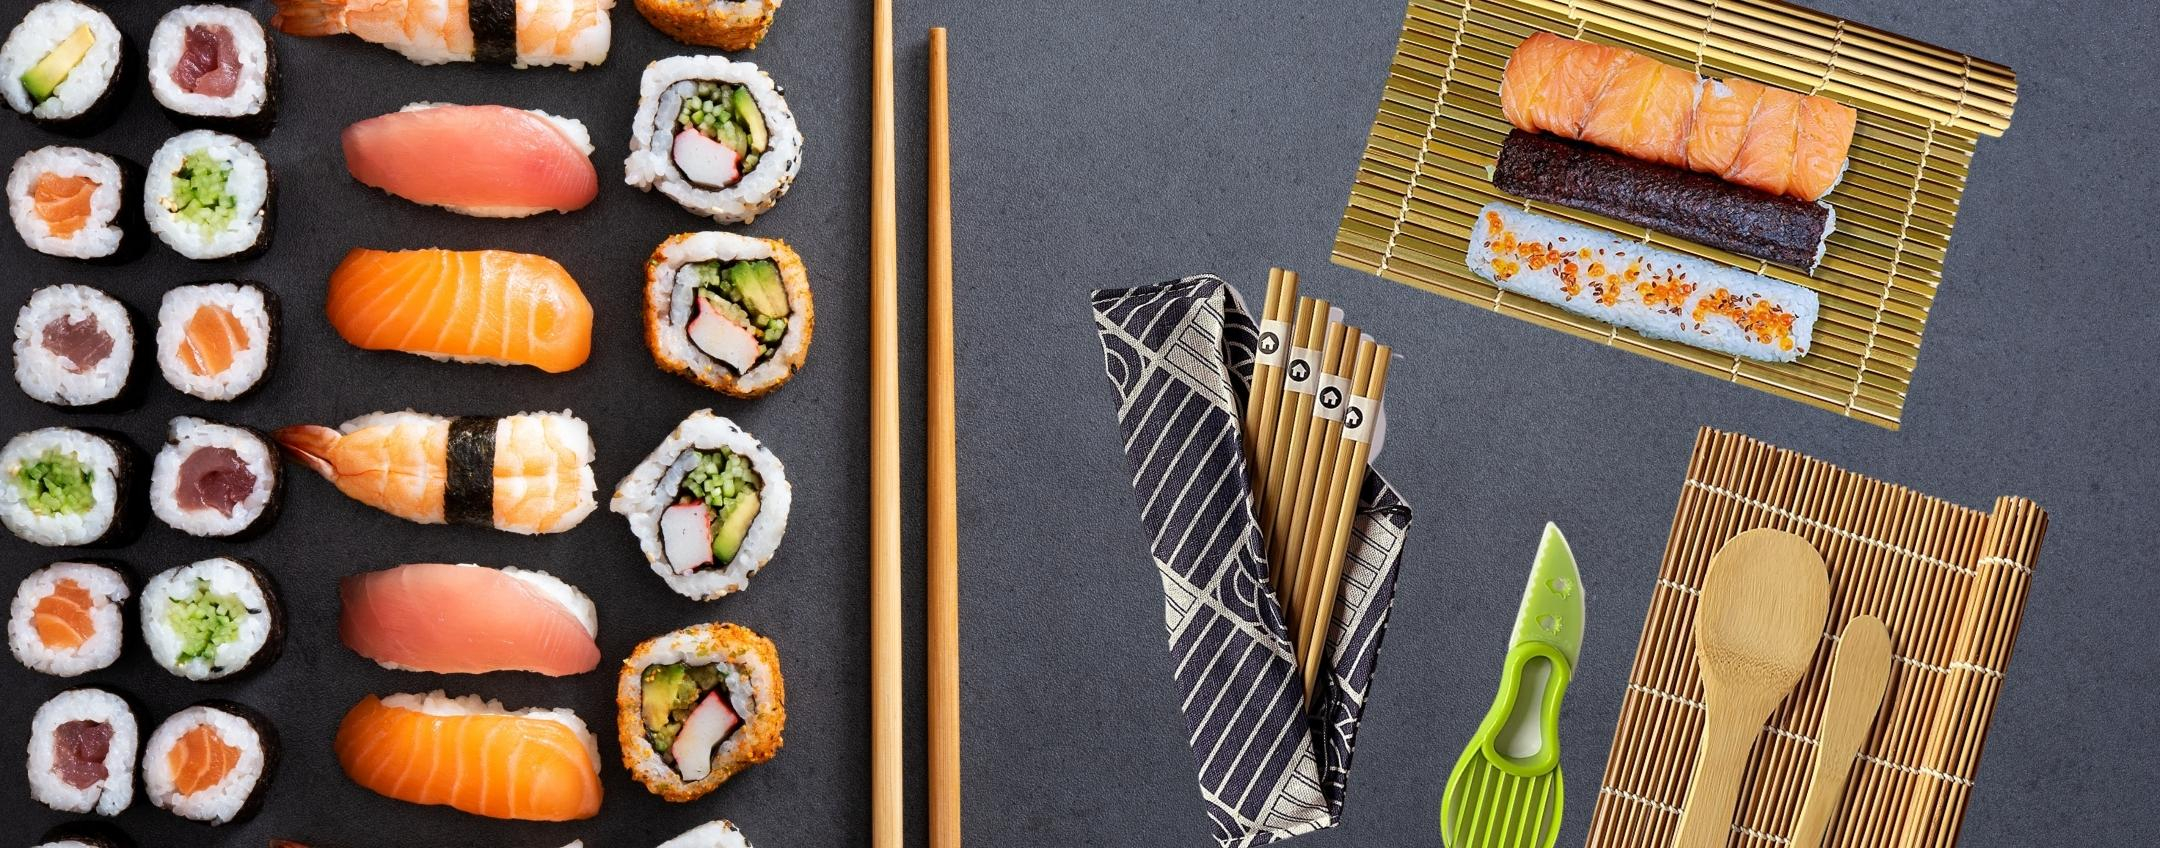 Addio All You Can Eat, da oggi fai il sushi a casa con questo KIT (10pz)